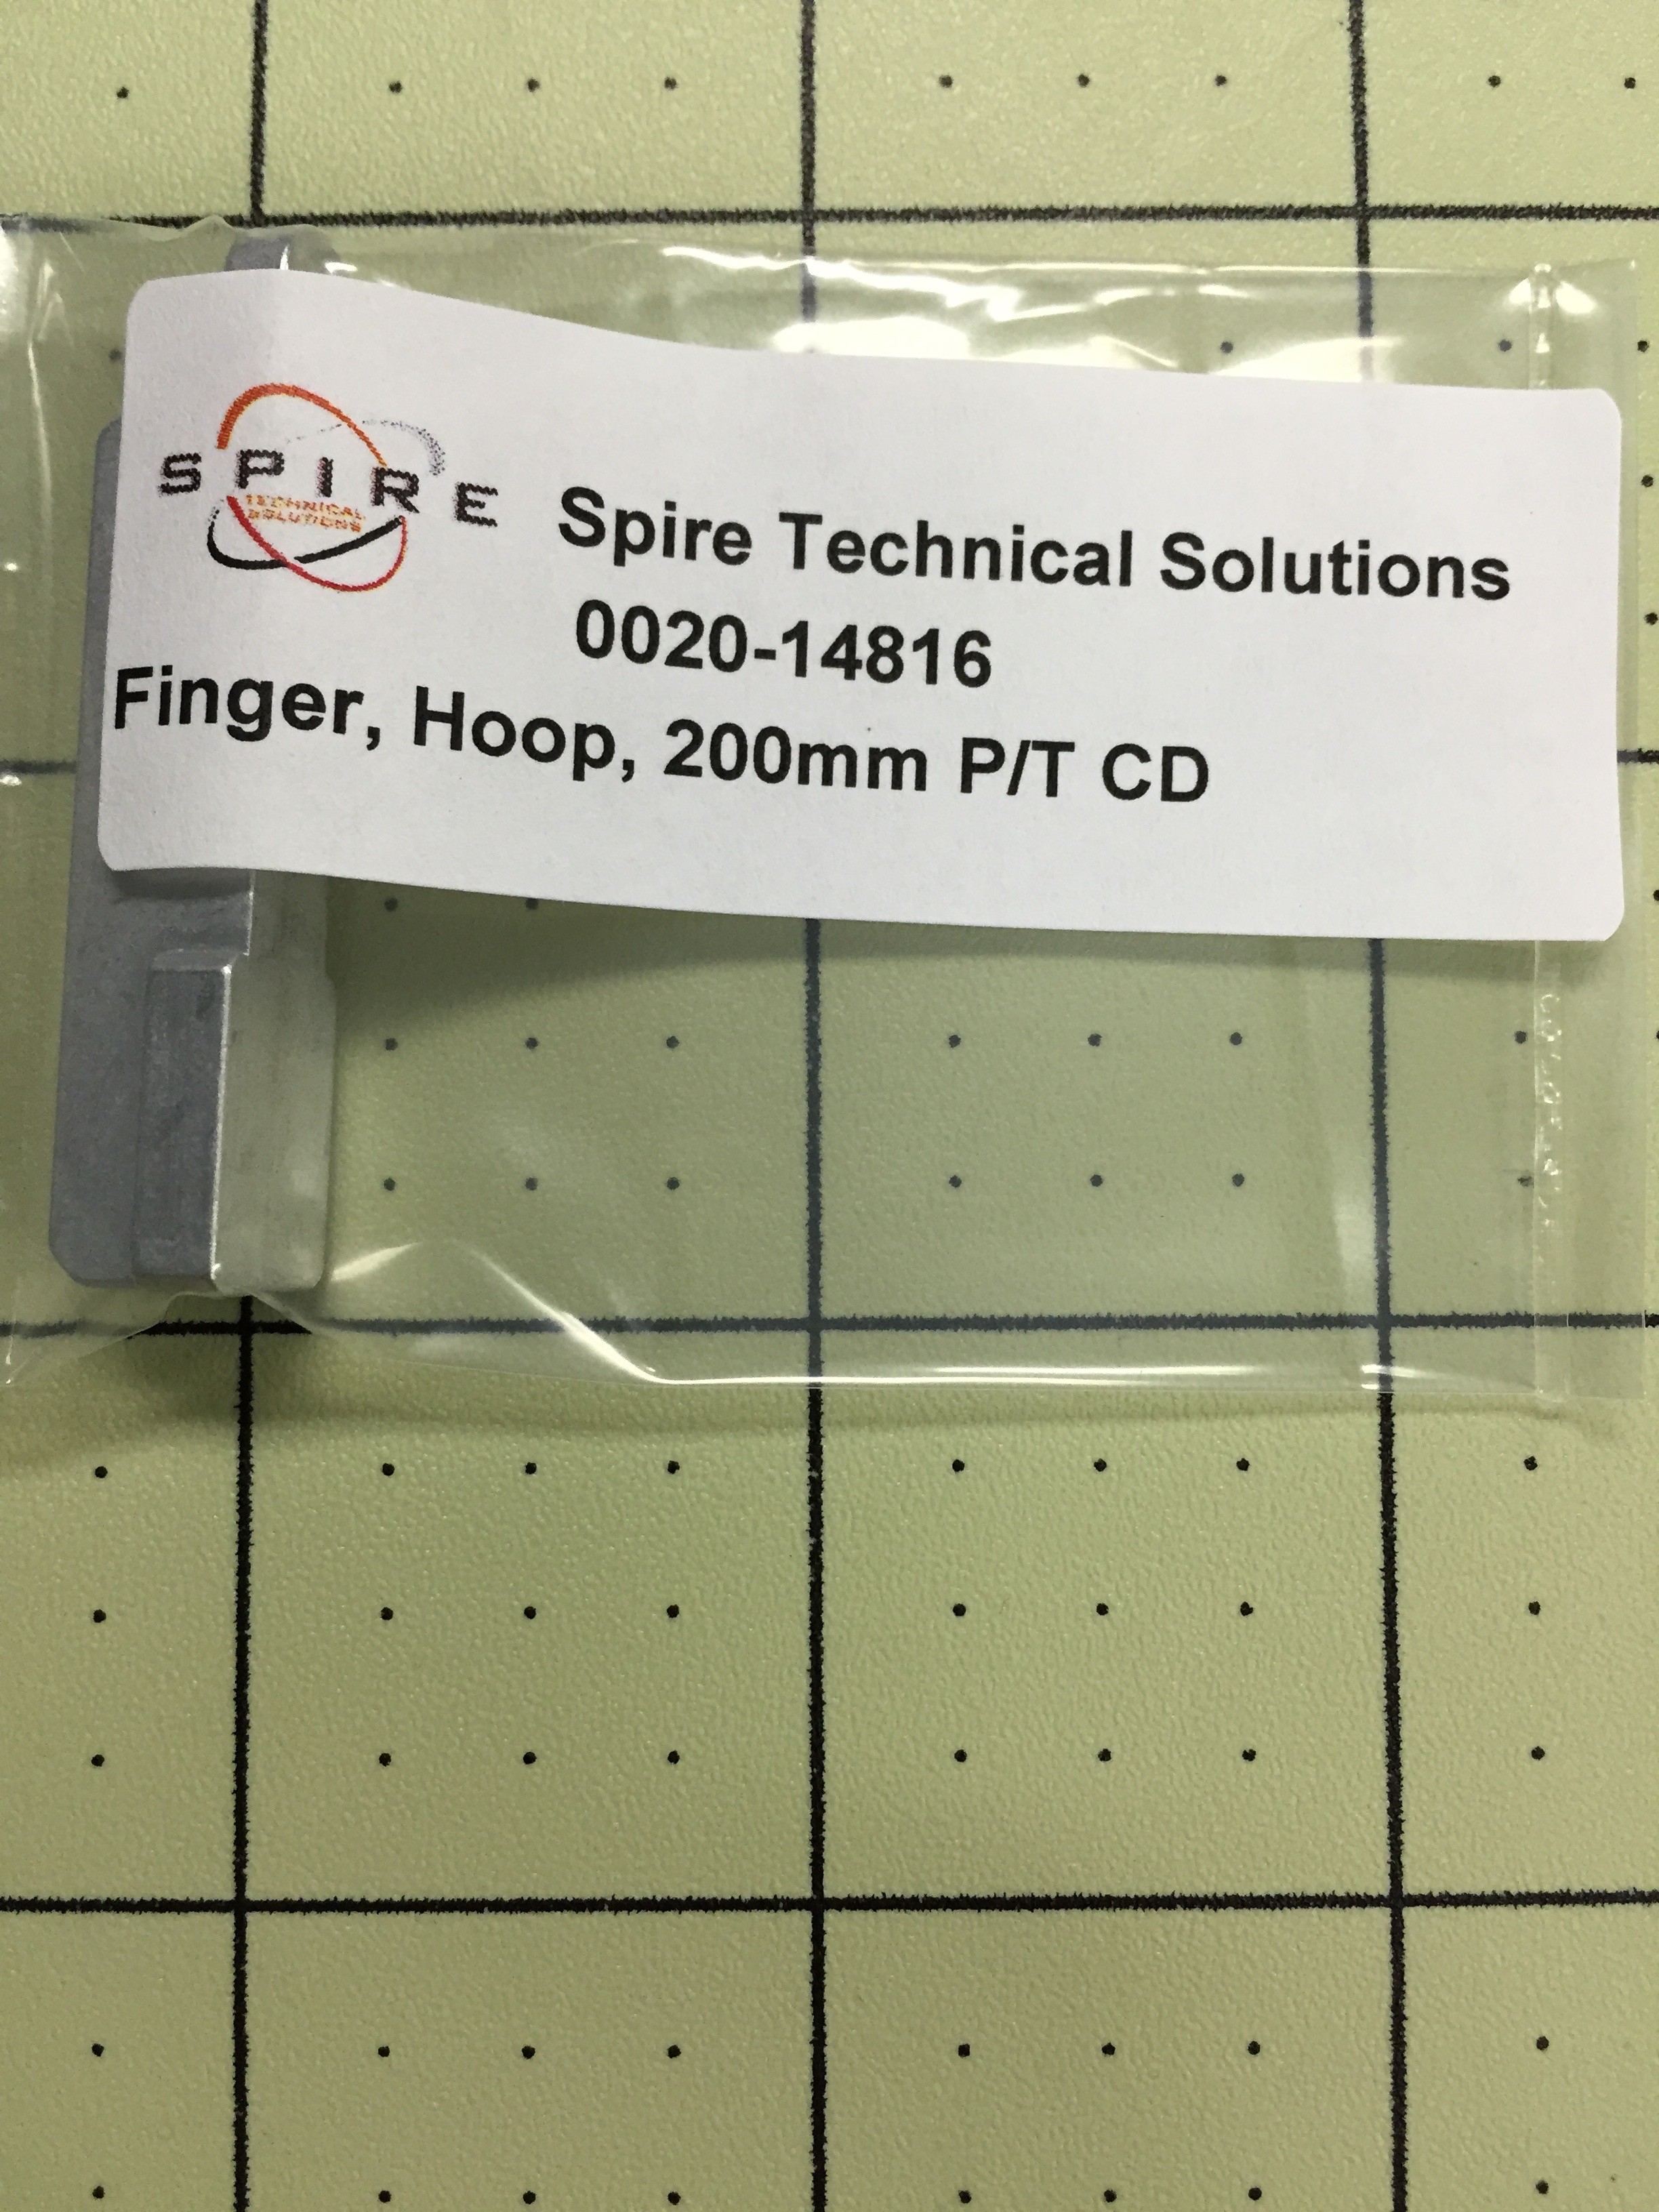 Finger, Hoop, 200mm P/T CD